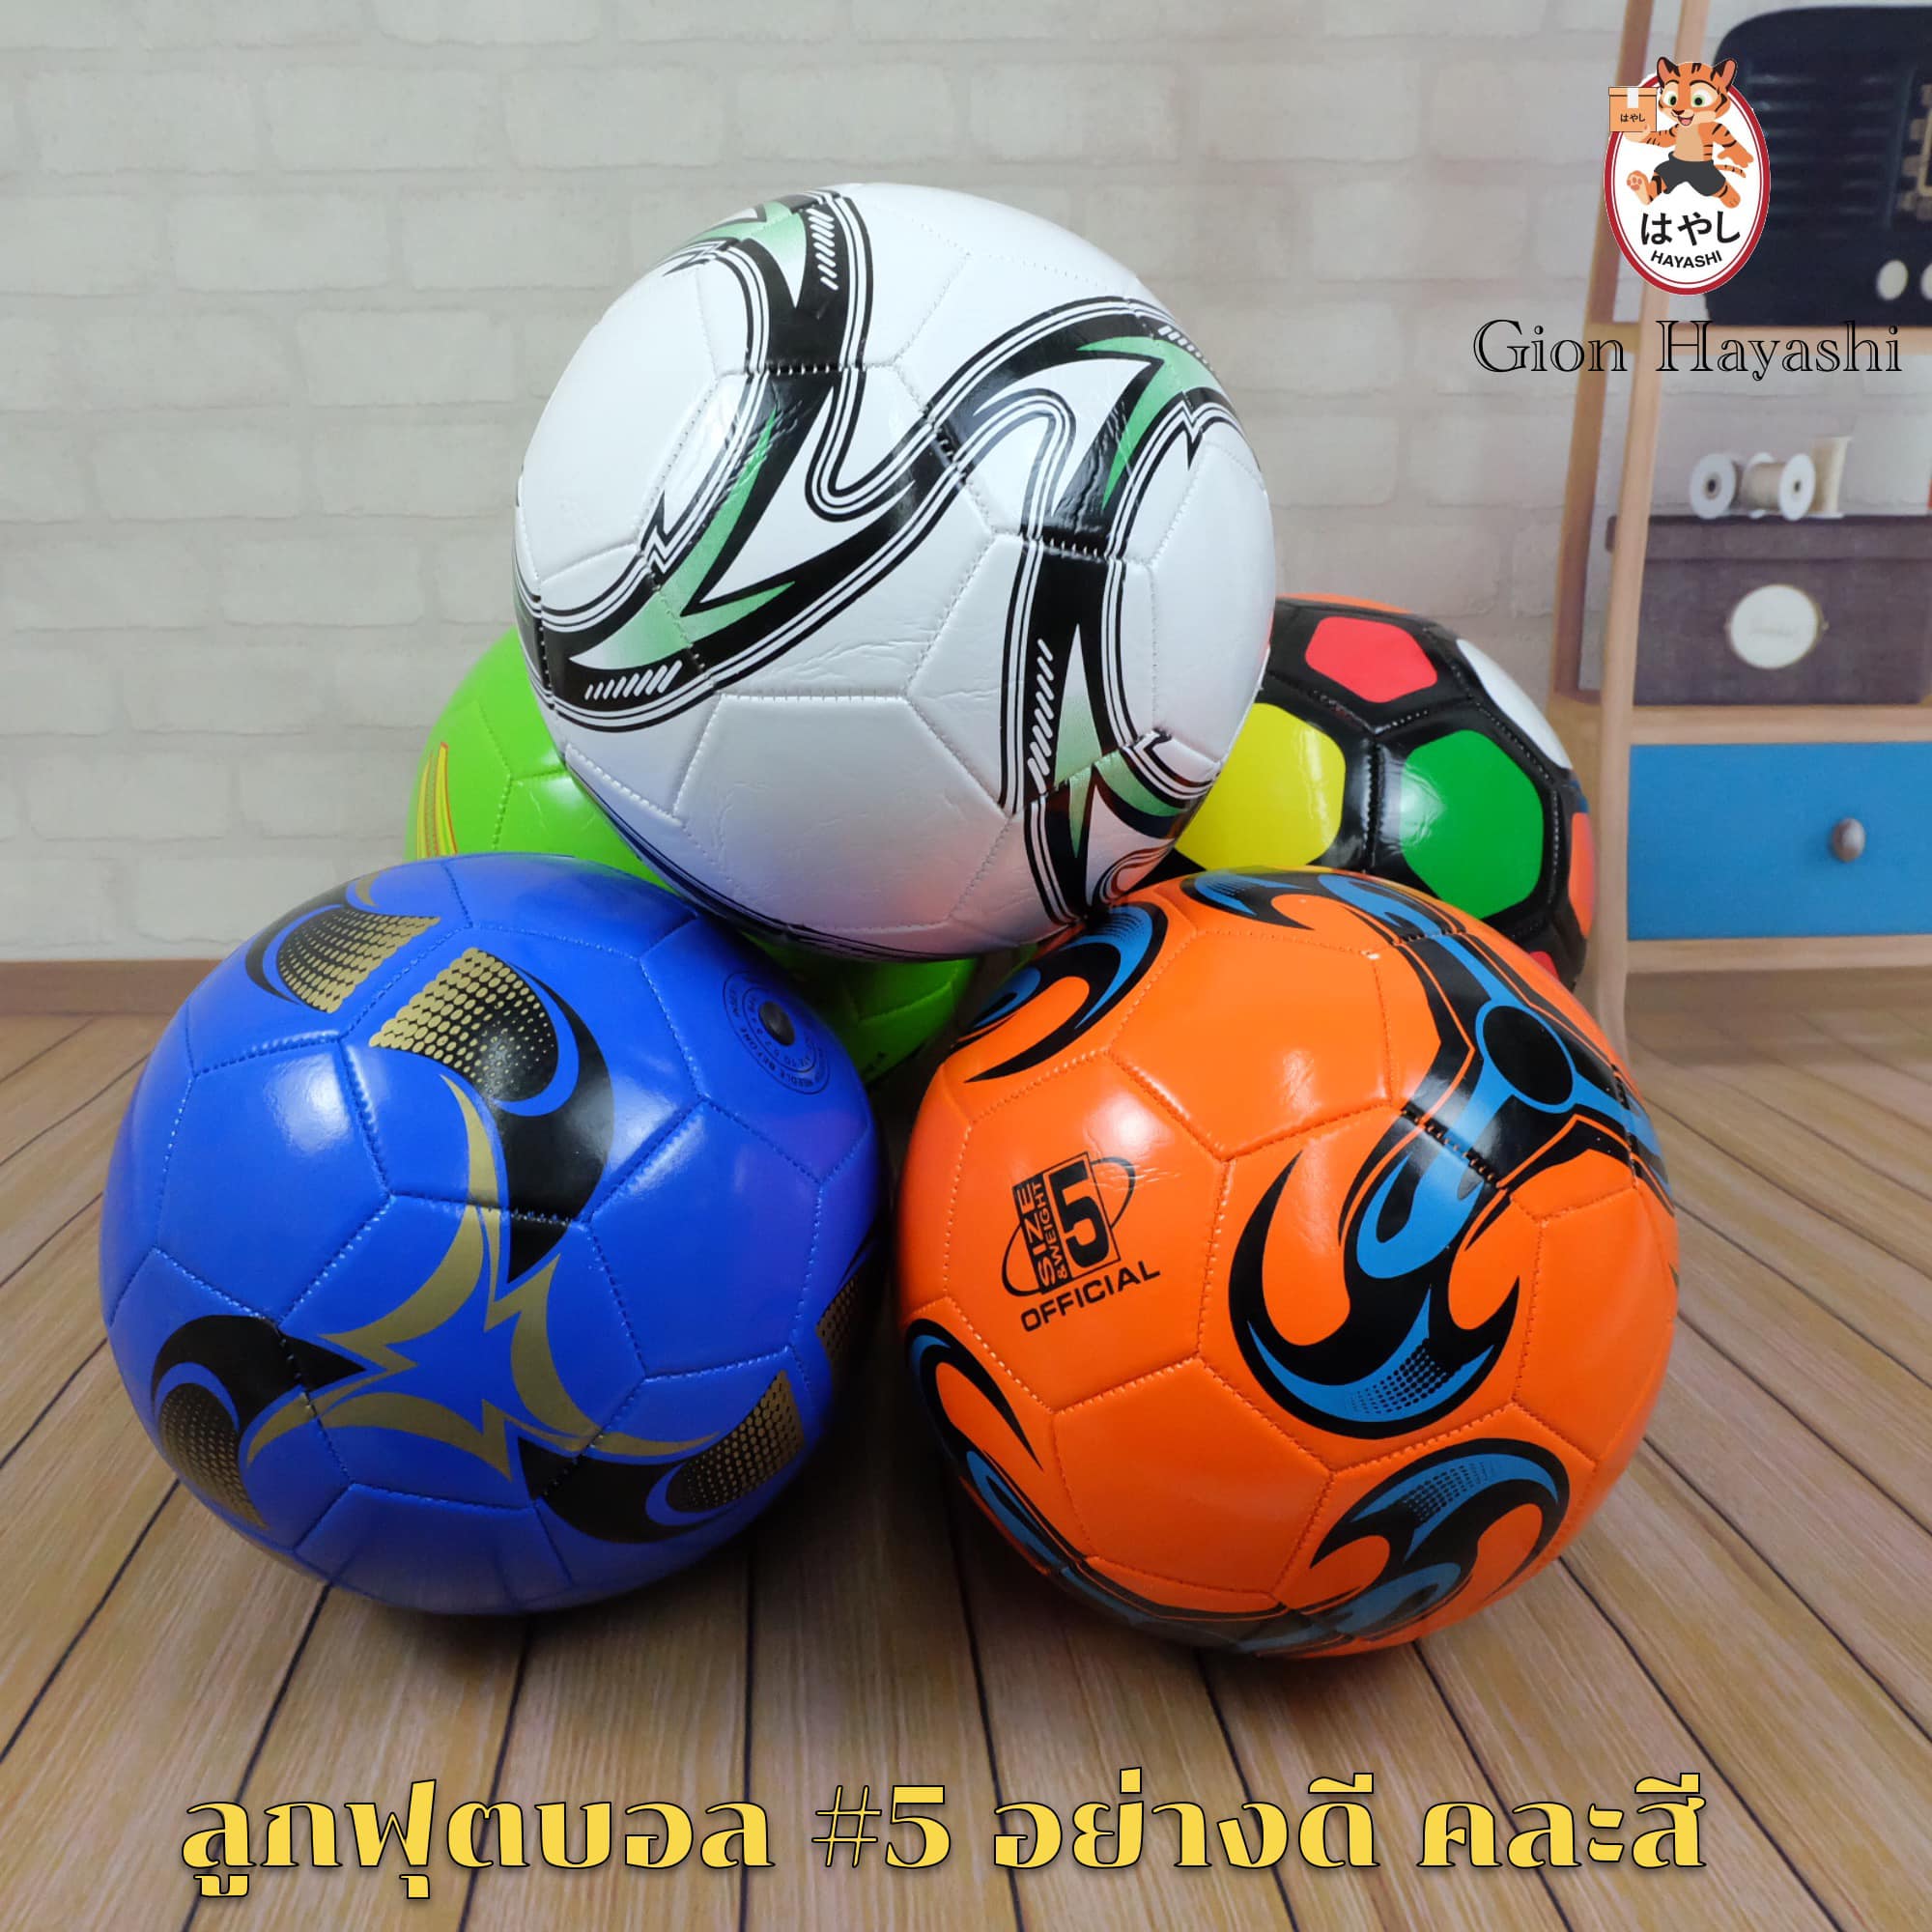 [ คละสี ] Gion - ลูกฟุตบอลไซส์มาตรฐาน Size 5 ทำจากวัสดุ PVC รุ่น DK-002